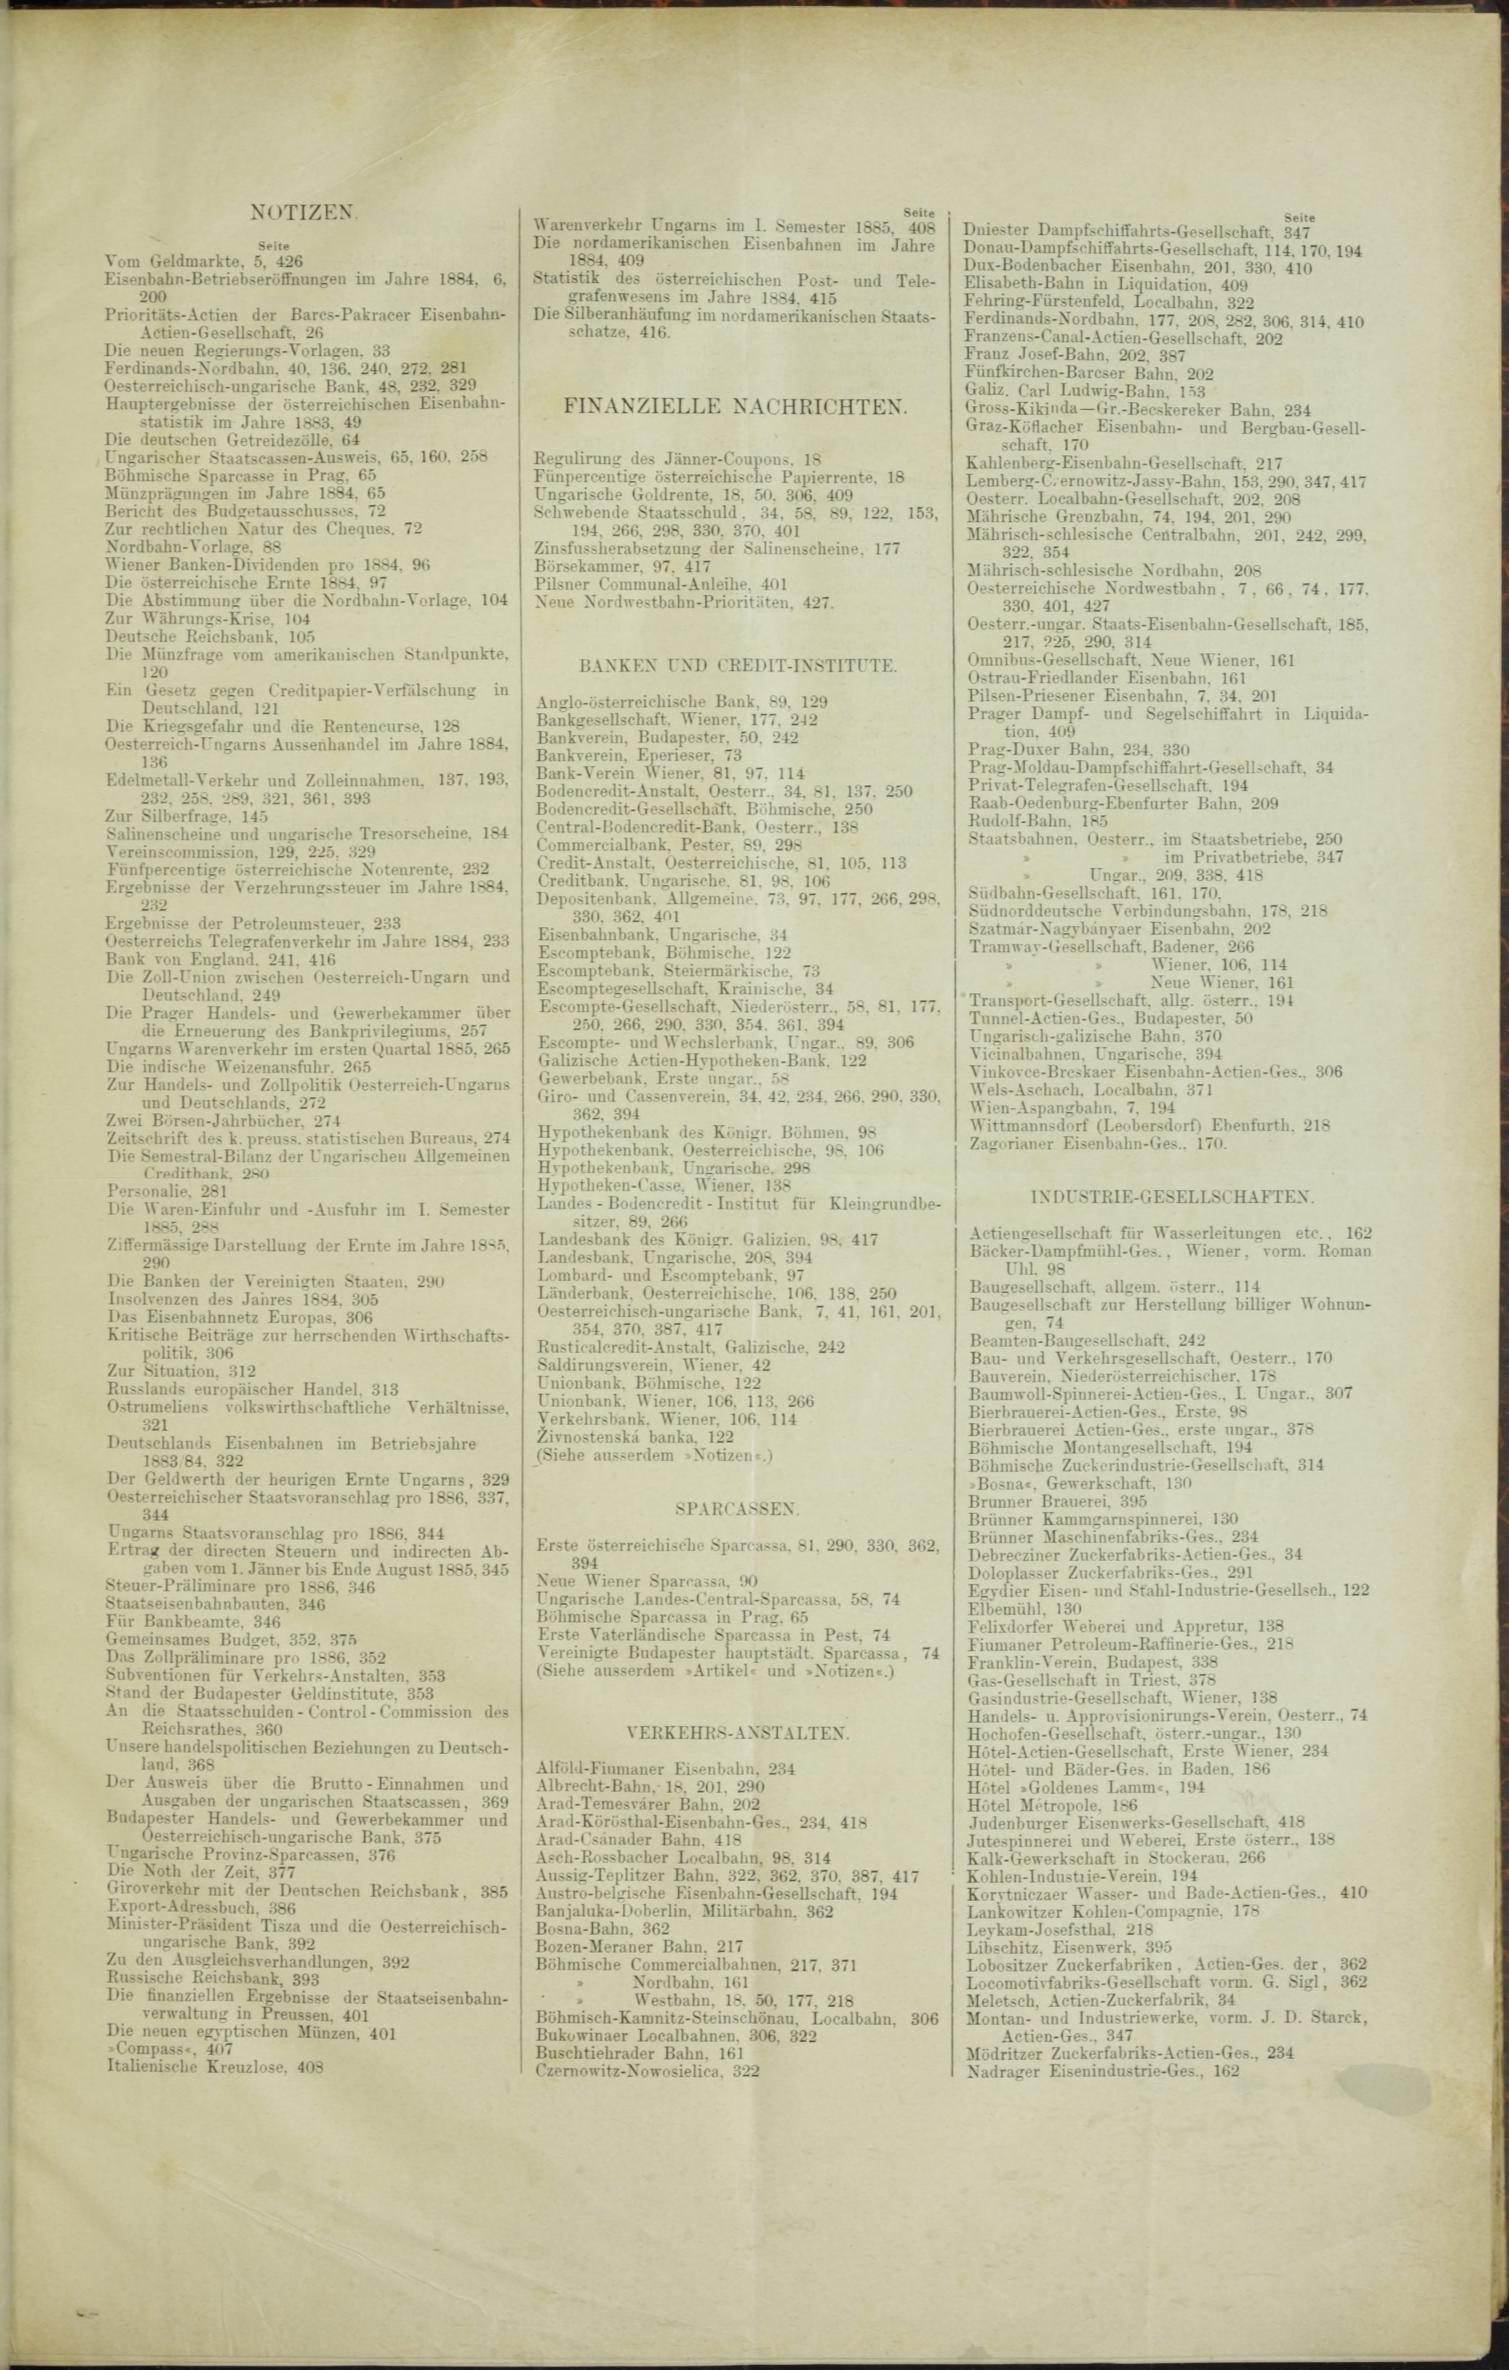 Der Tresor 05.02.1885 - Seite 11